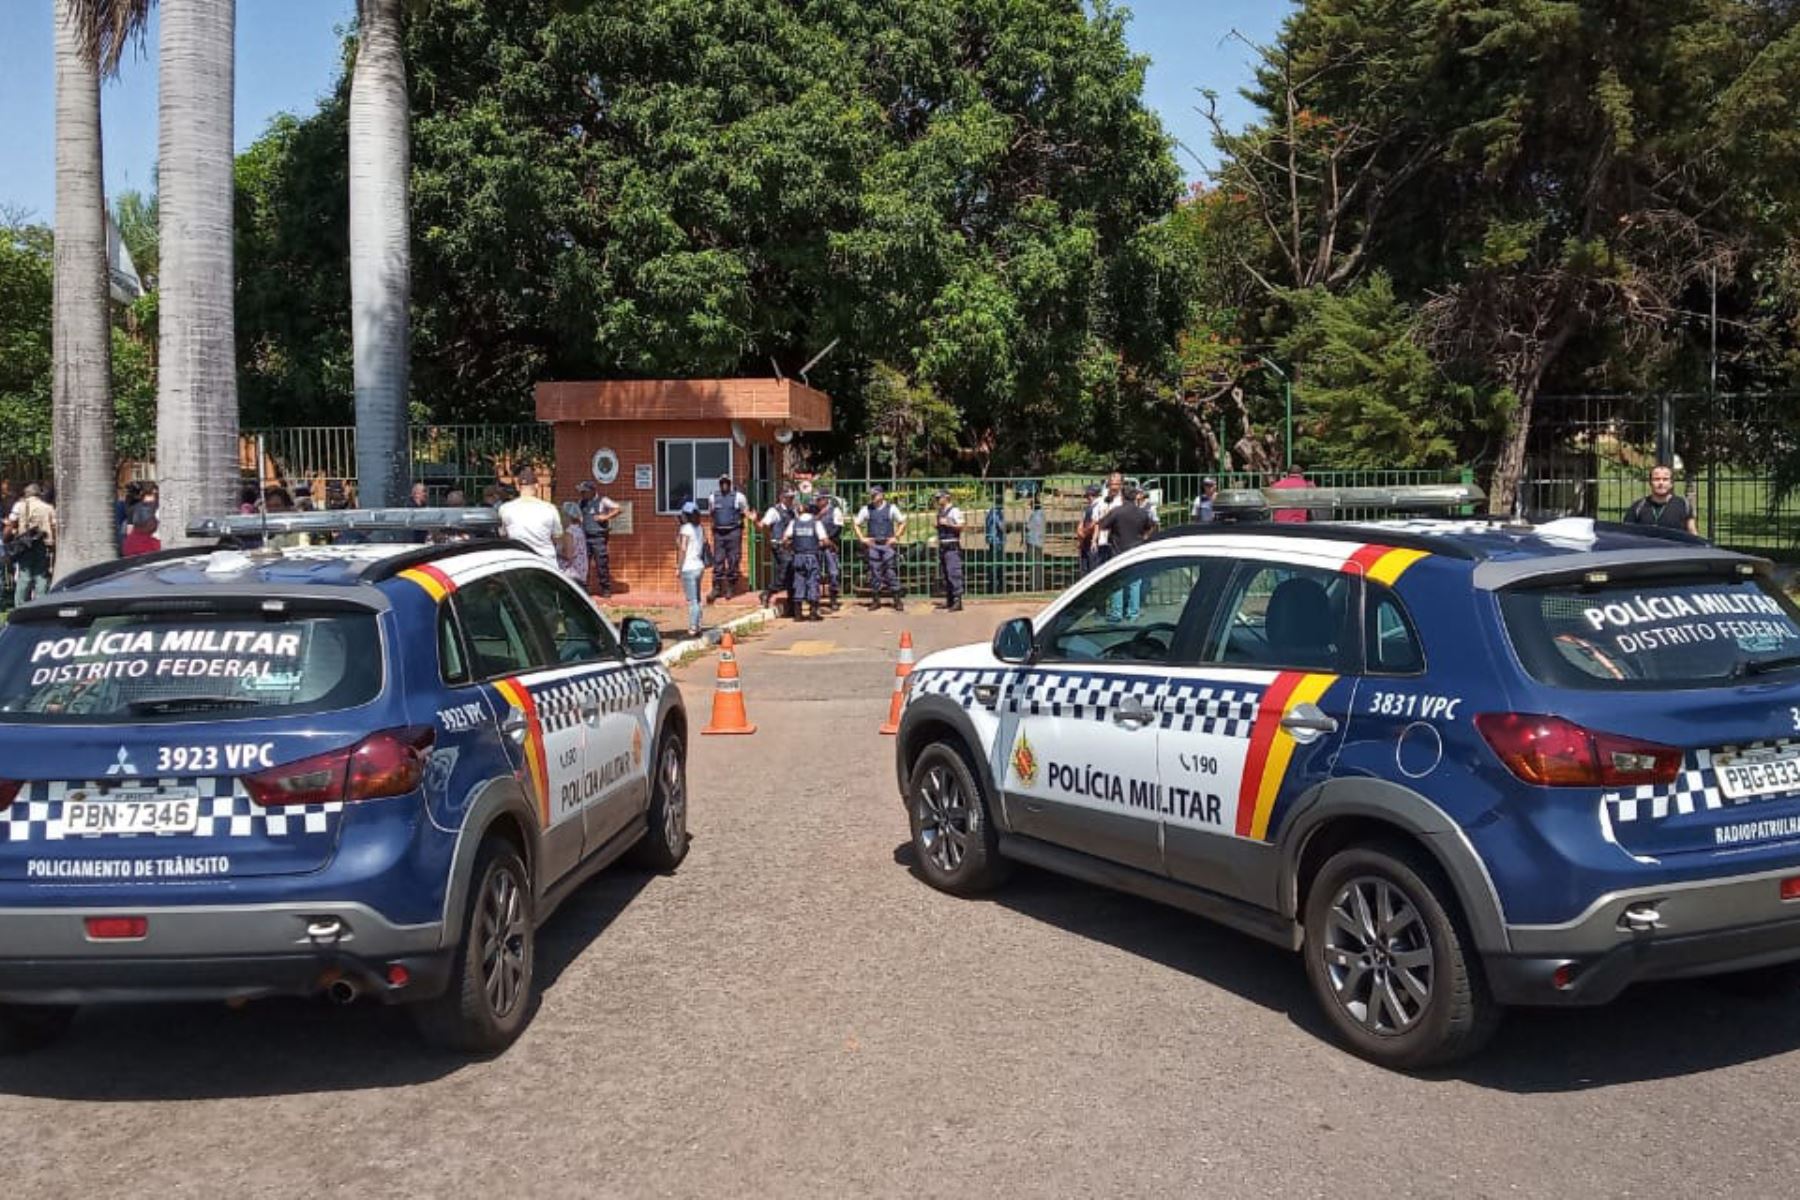 La policía militar patrulla los alrededores de la embajada de Venezuela en Brasilia, Brasil, mientras que los leales al presidente Nicolás Maduro y al líder de la oposición venezolana Juan Guaidó se enfrentan dentro de la embajada del país. Foto: AFP